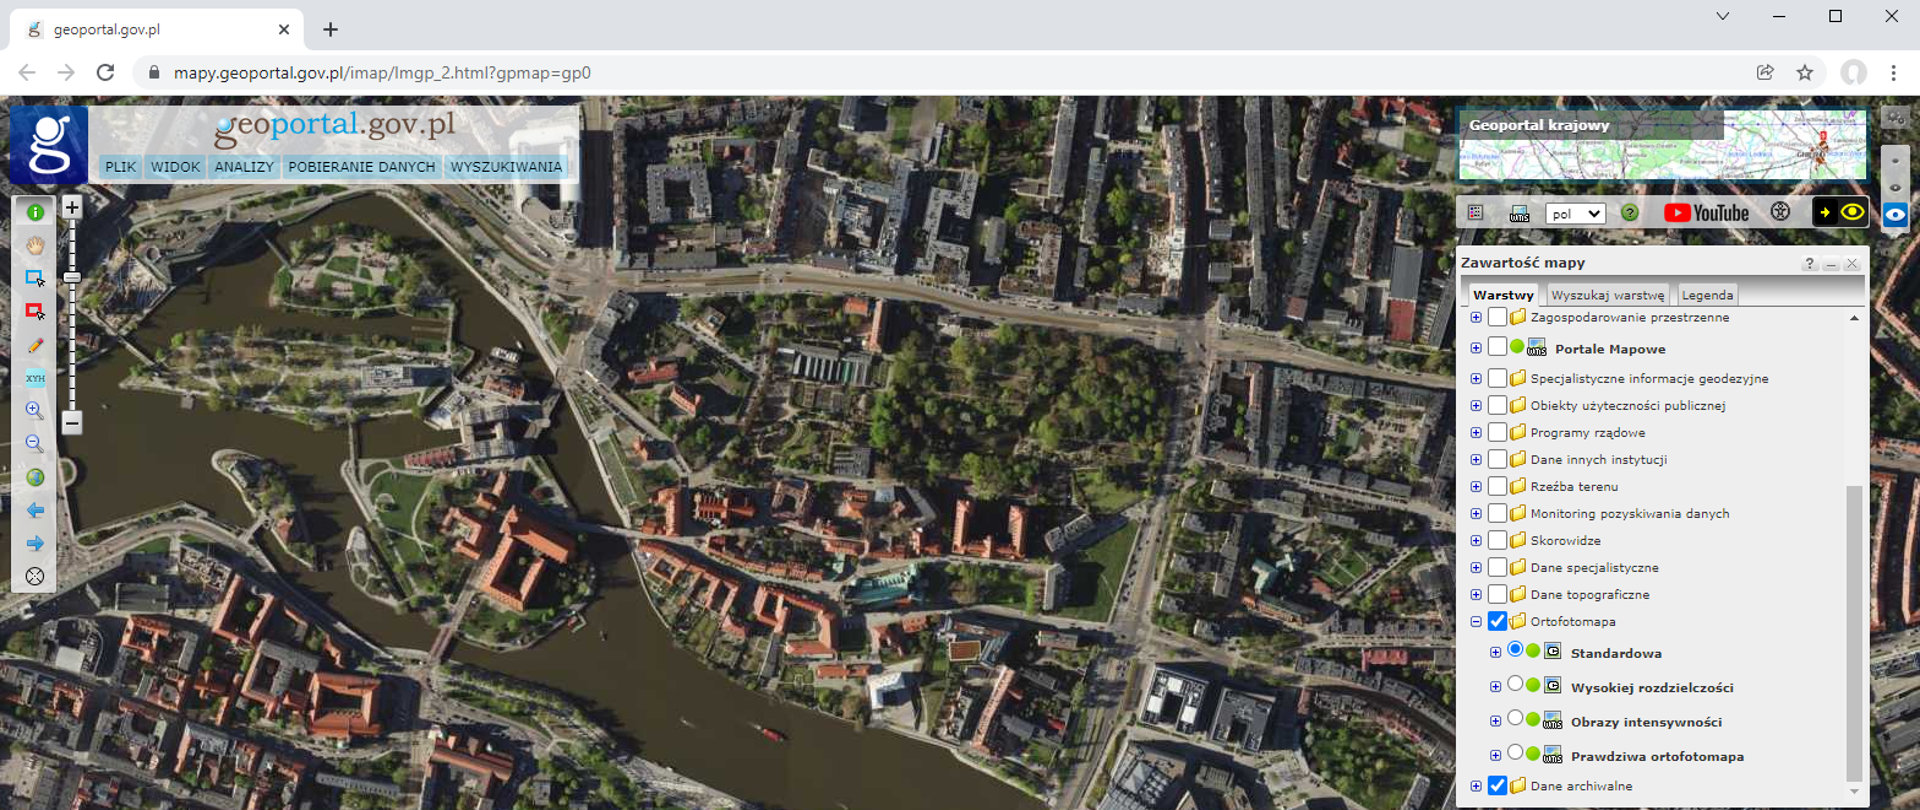 Rysunek przedstawia zrzut ekranu z serwisu www.geoportal.gov.pl prezentujący ortofotomapę dla miasta Wrocławia.